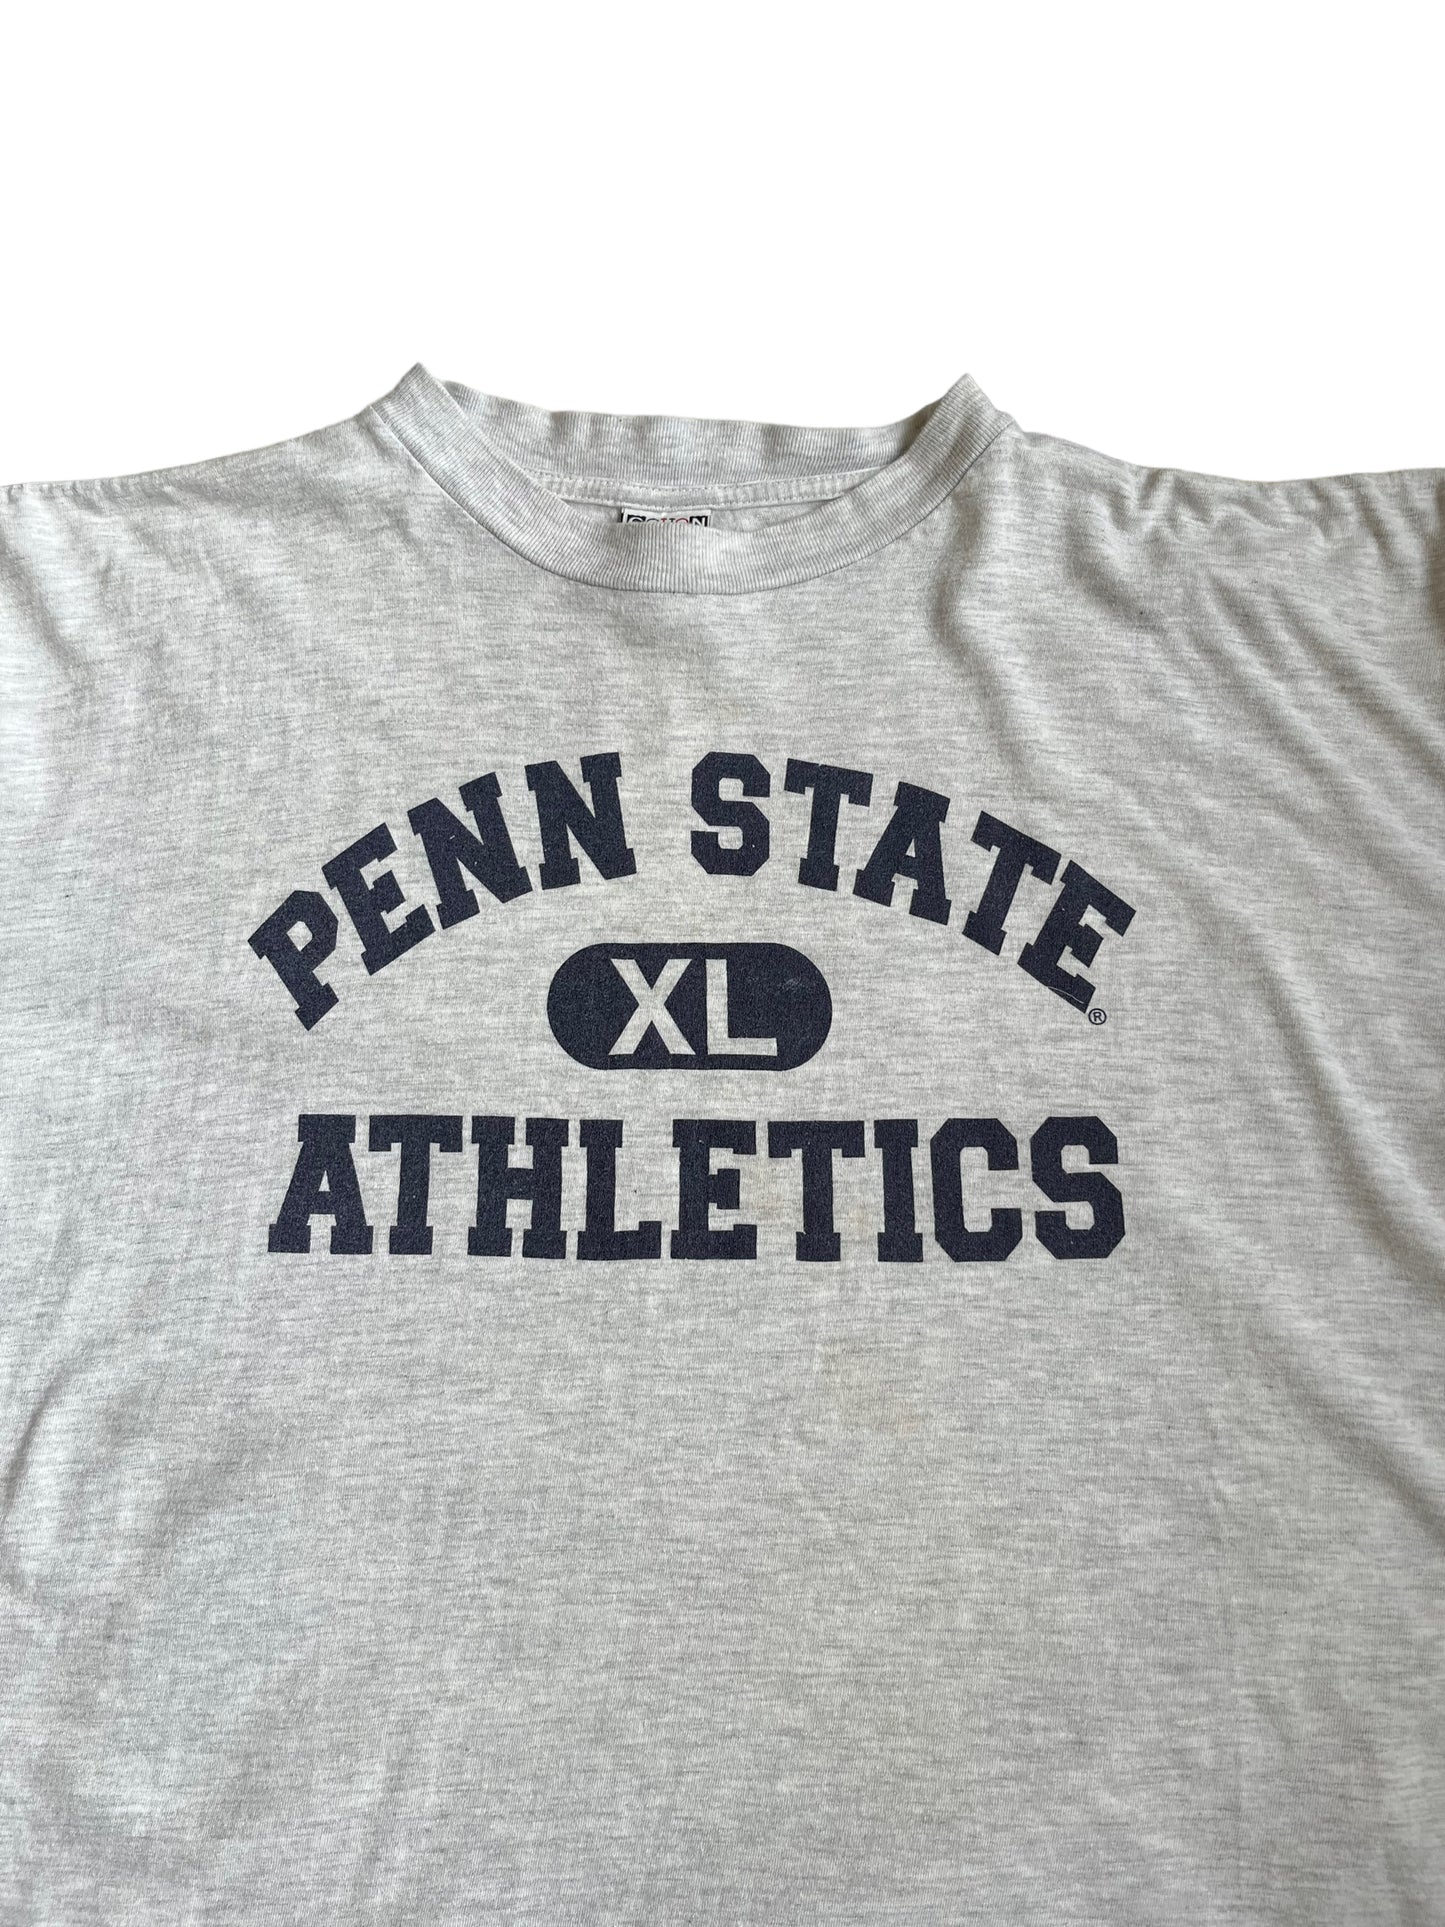 (XL) Vintage Penn State Athletics Tee